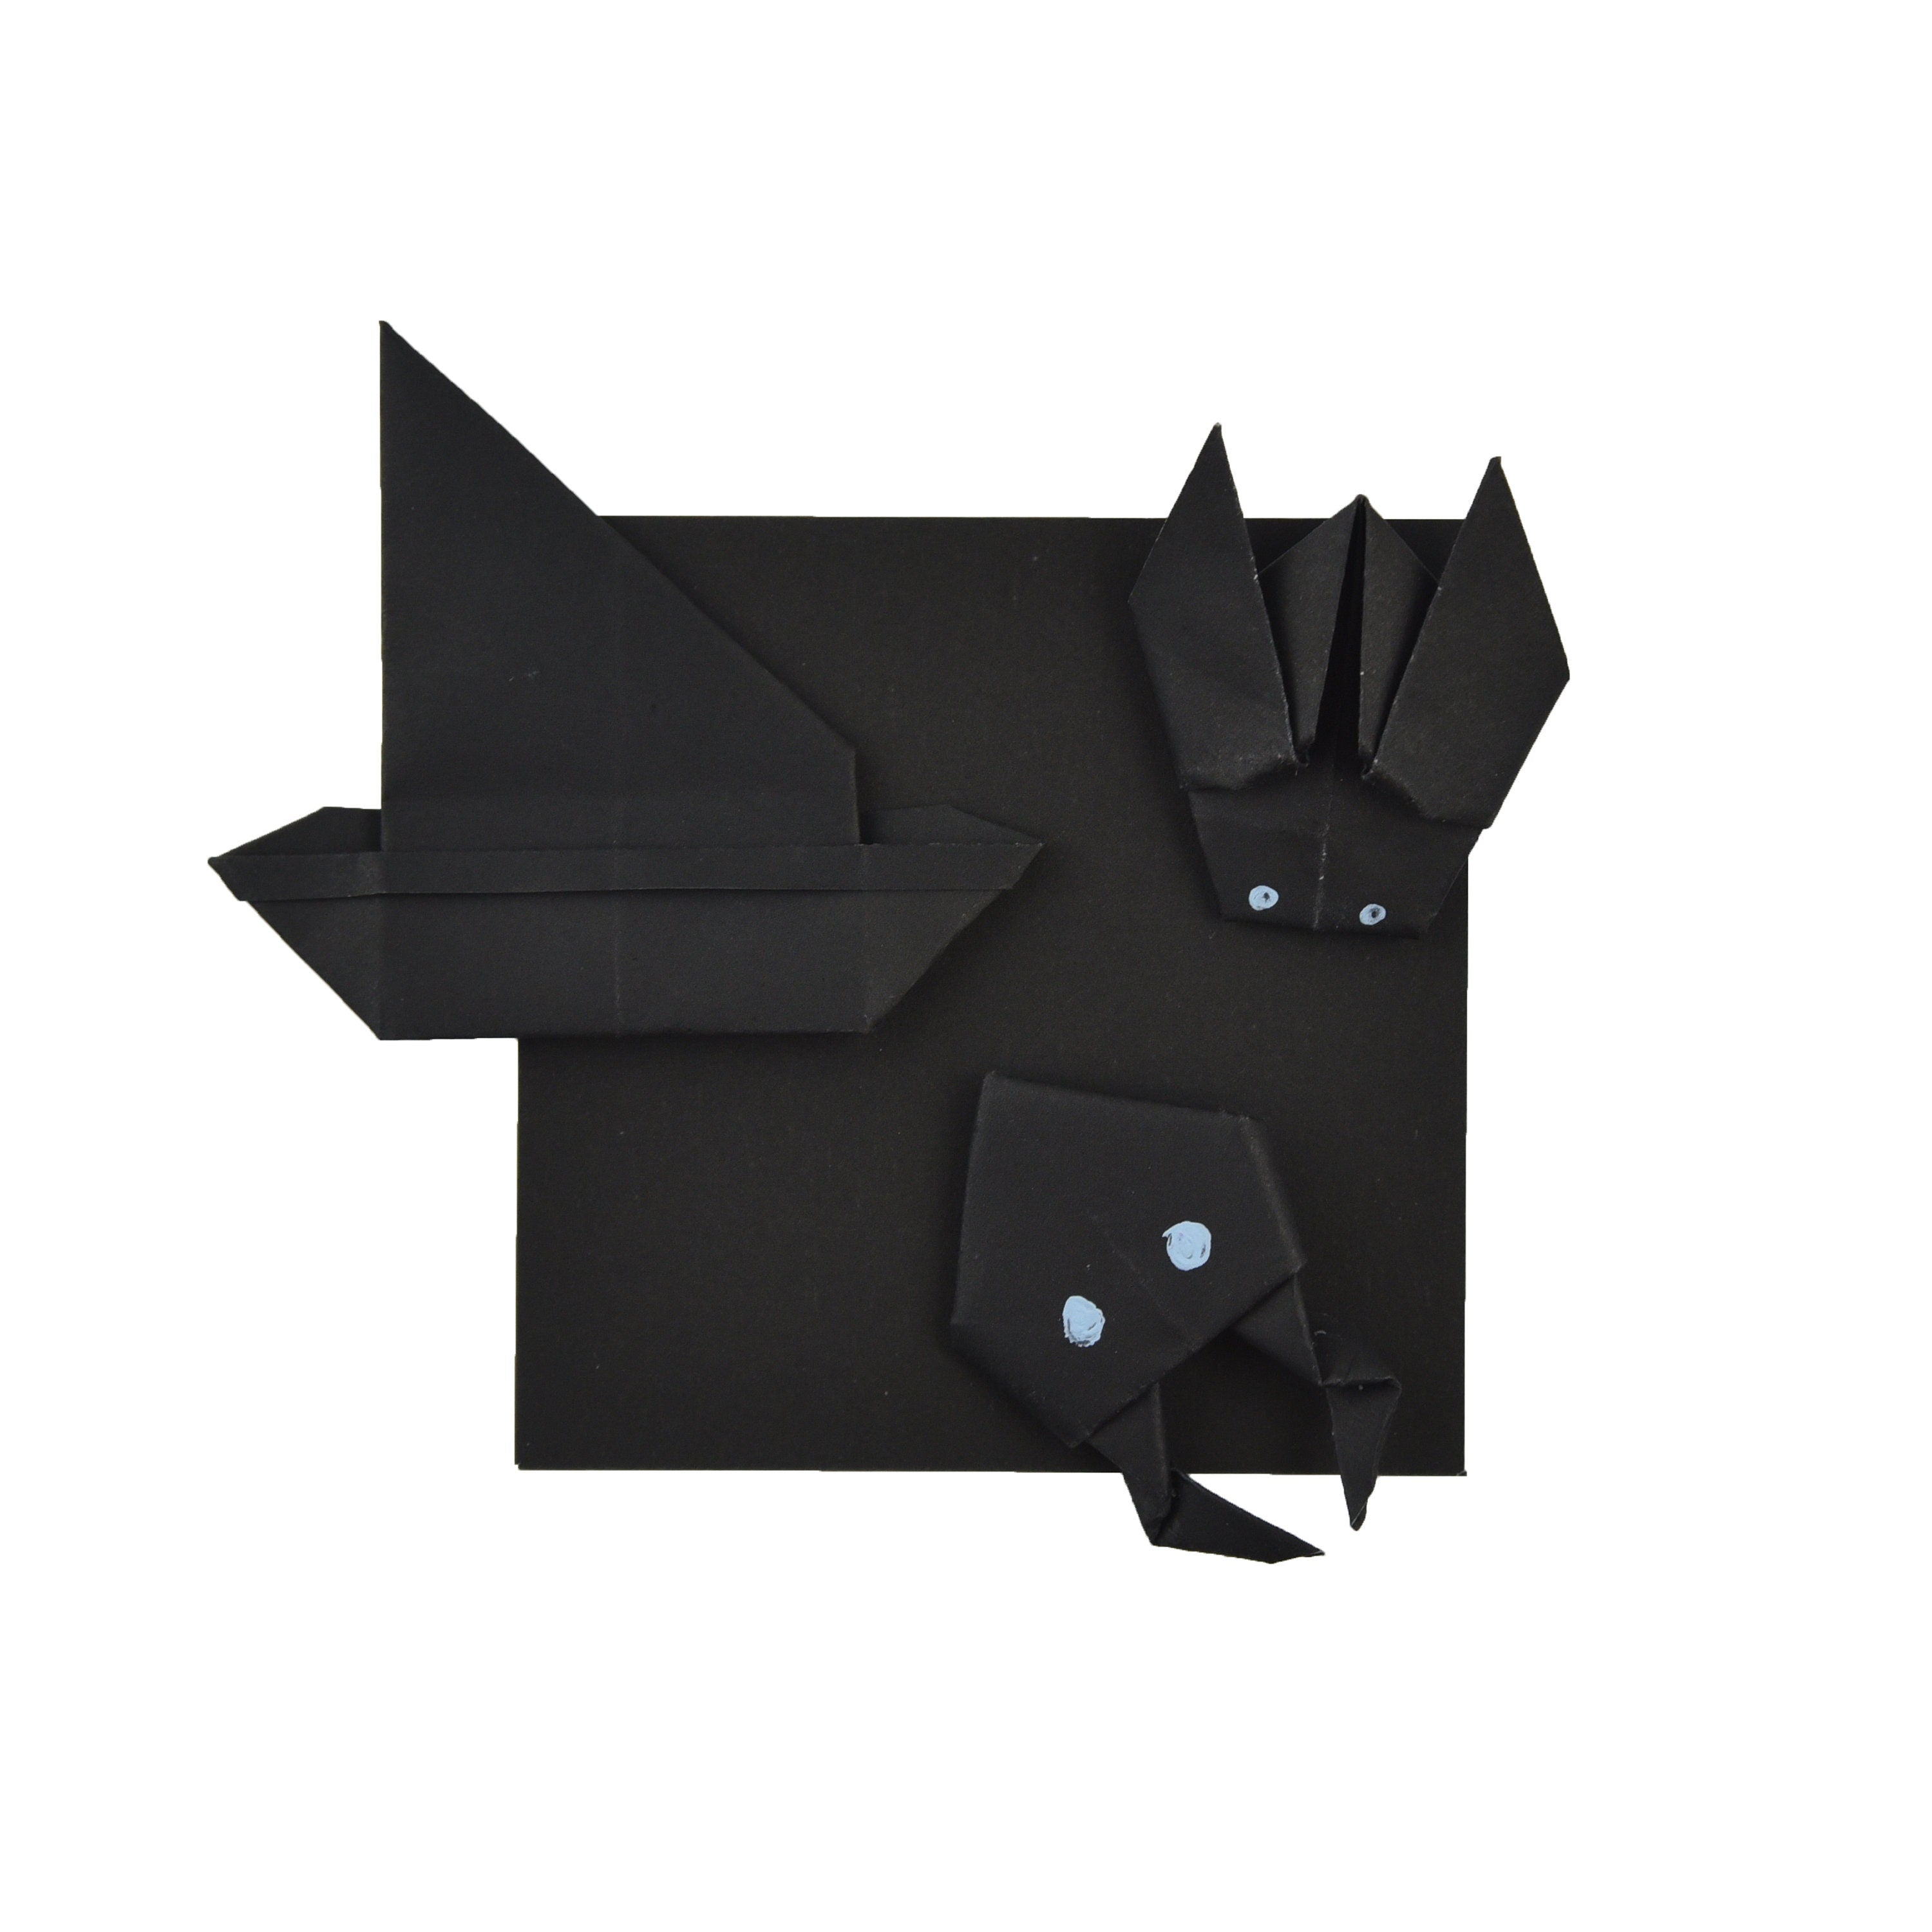 100 fogli di carta origami neri - 6x6 pollici - Confezione di carta quadrata per piegare, gru origami e decorazioni - S11